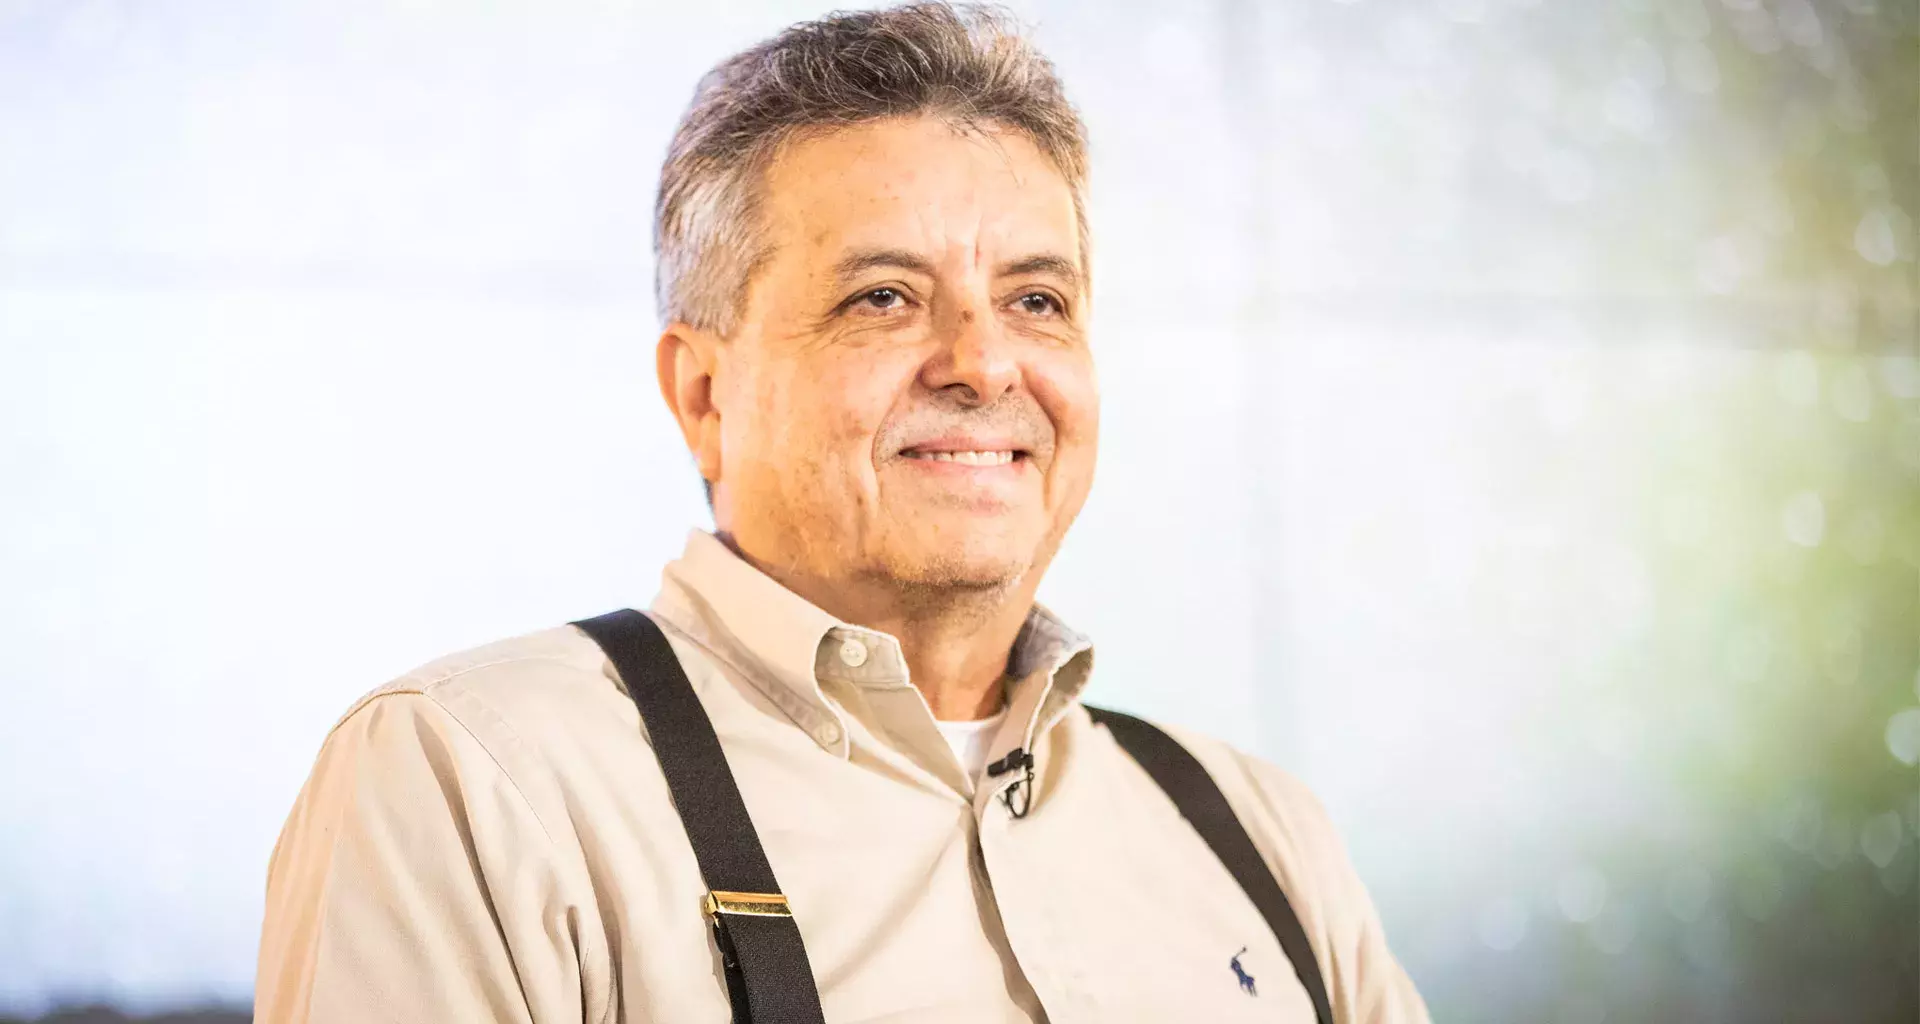 El Dr. Cipriano Santos se incorpora al Tec como profesor distinguido de la Escuela de Ingeniería y Ciencias.